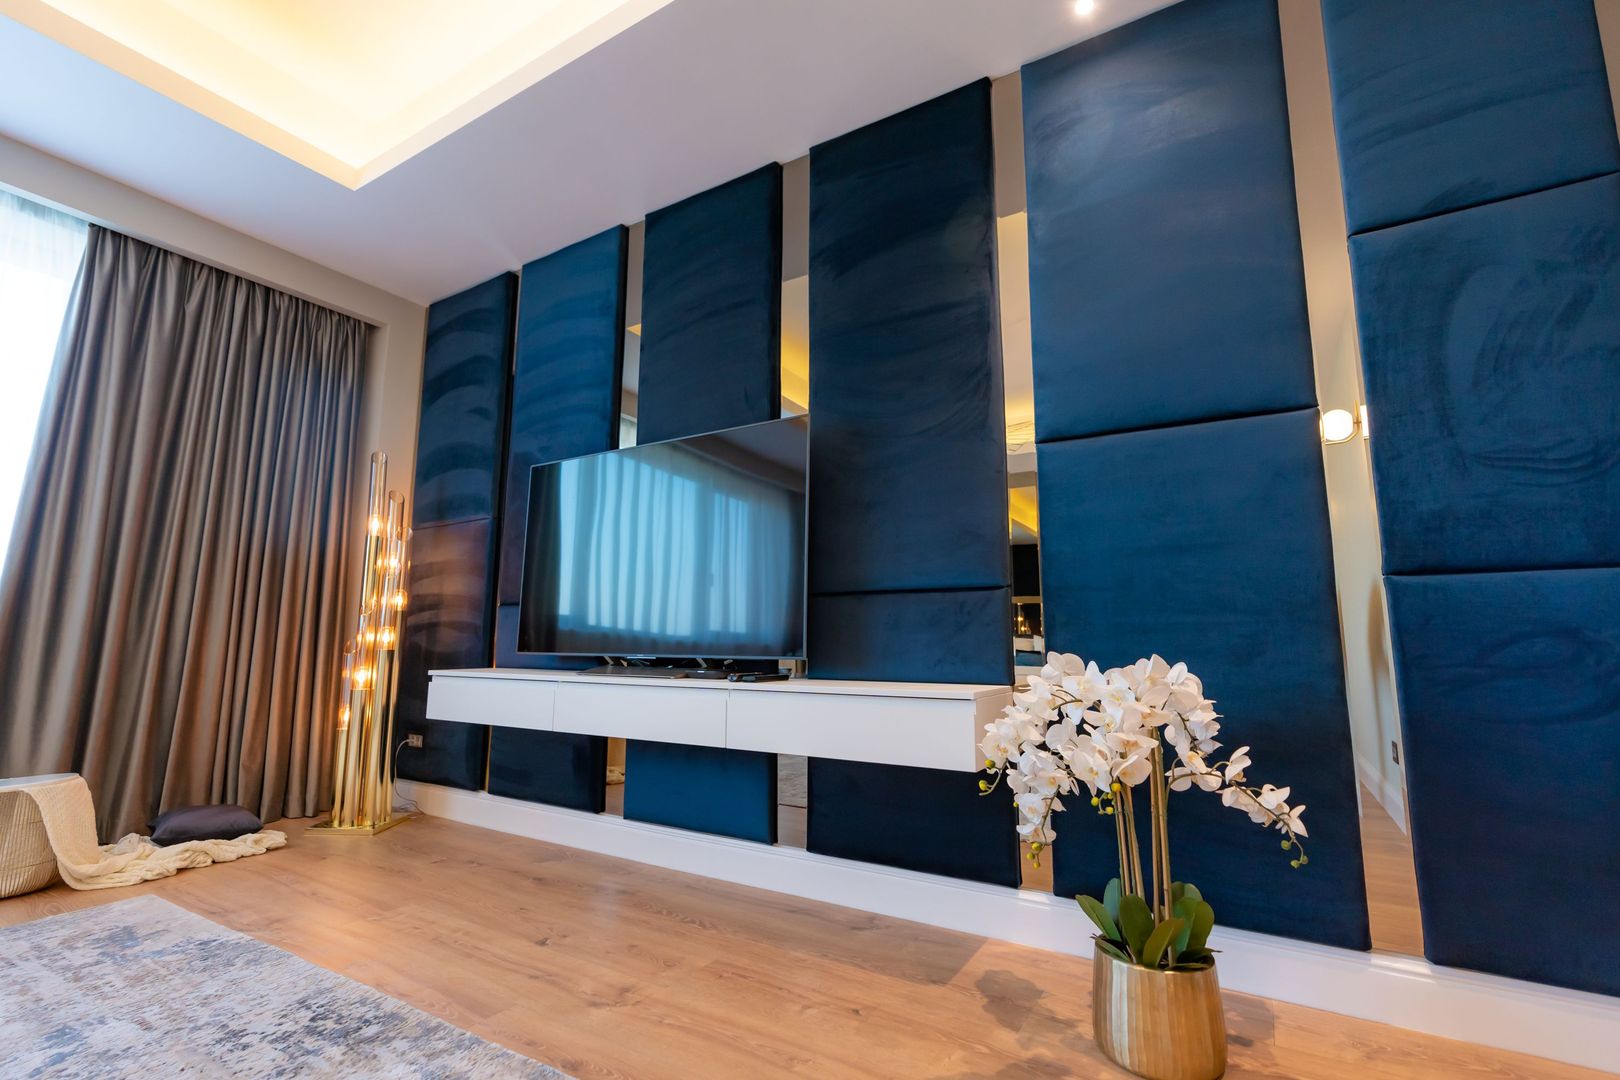 Luxury apartment | Penthouse Park View | 330 sm, terrace 70 sm